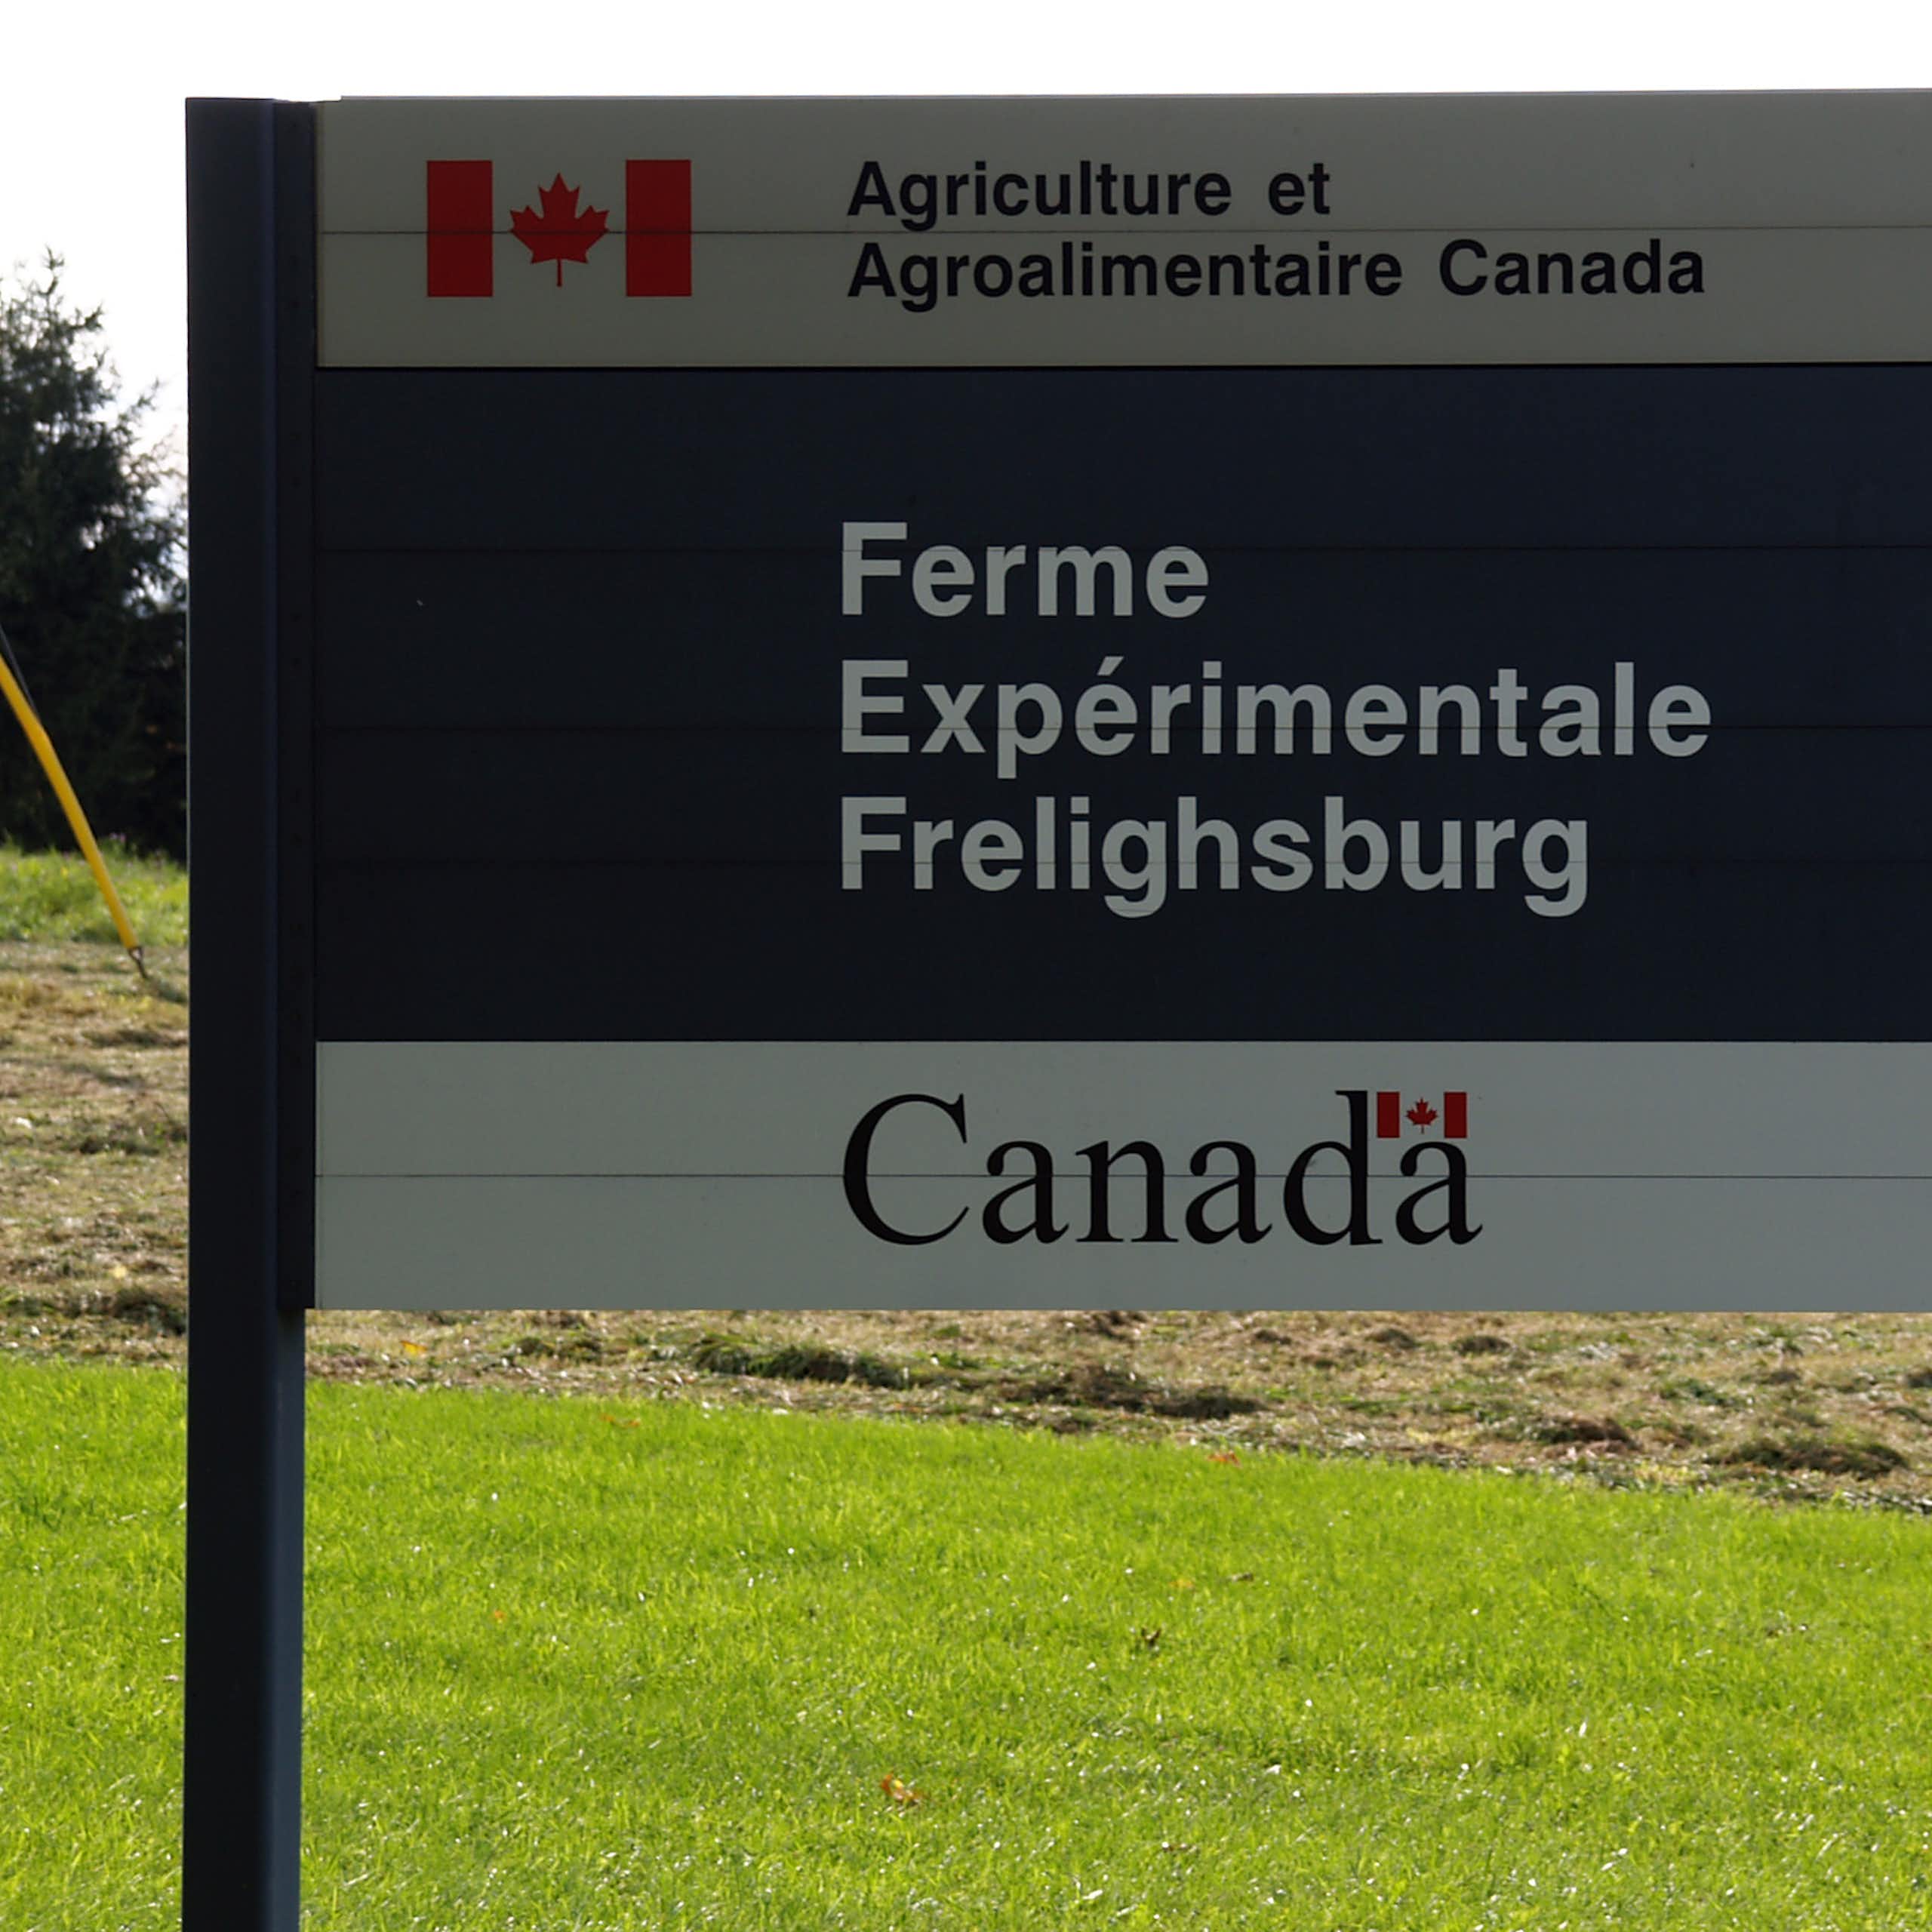 Pancarte indiquant une ferme expérimentale au Canada